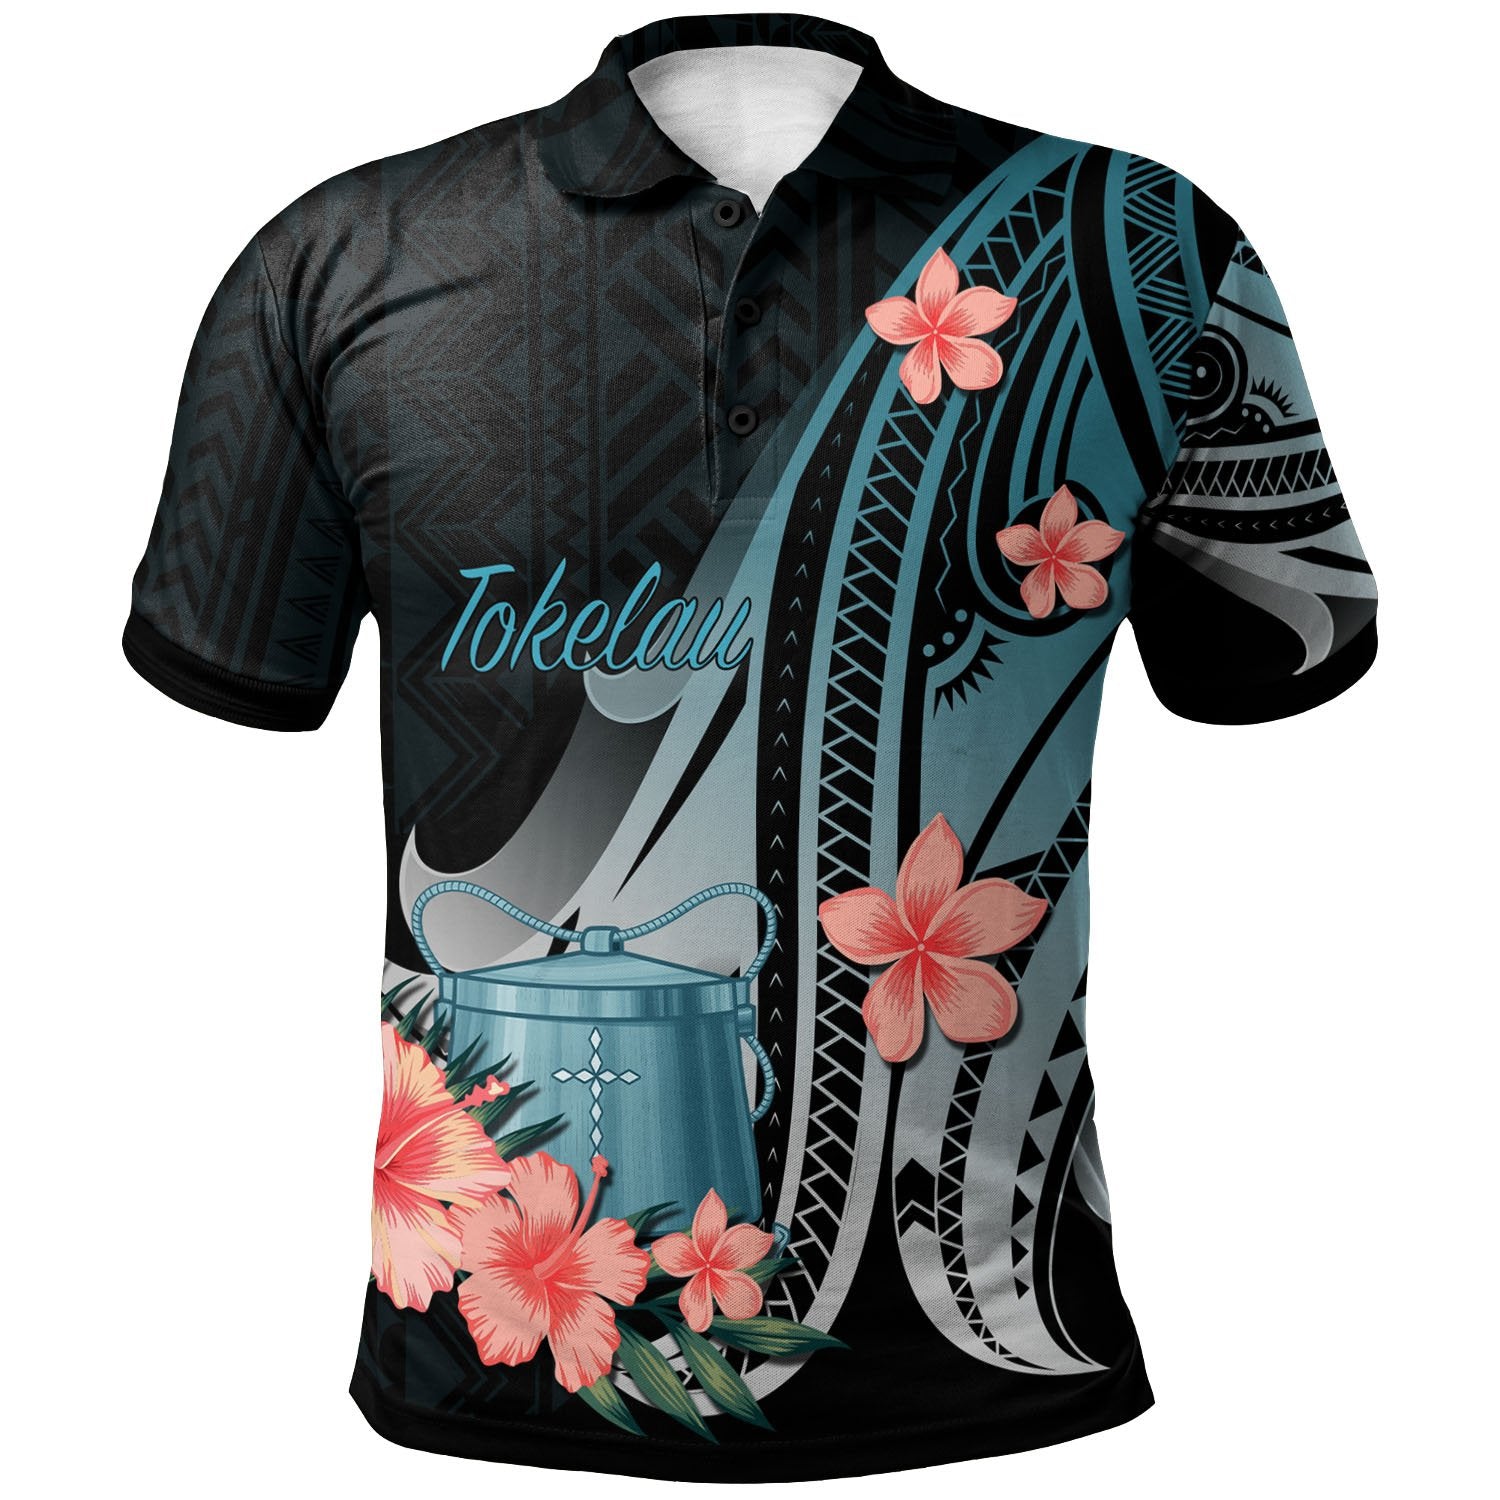 Tokelau Polo Shirt Turquoise Polynesian Hibiscus Pattern Style Unisex Turquoise - Polynesian Pride